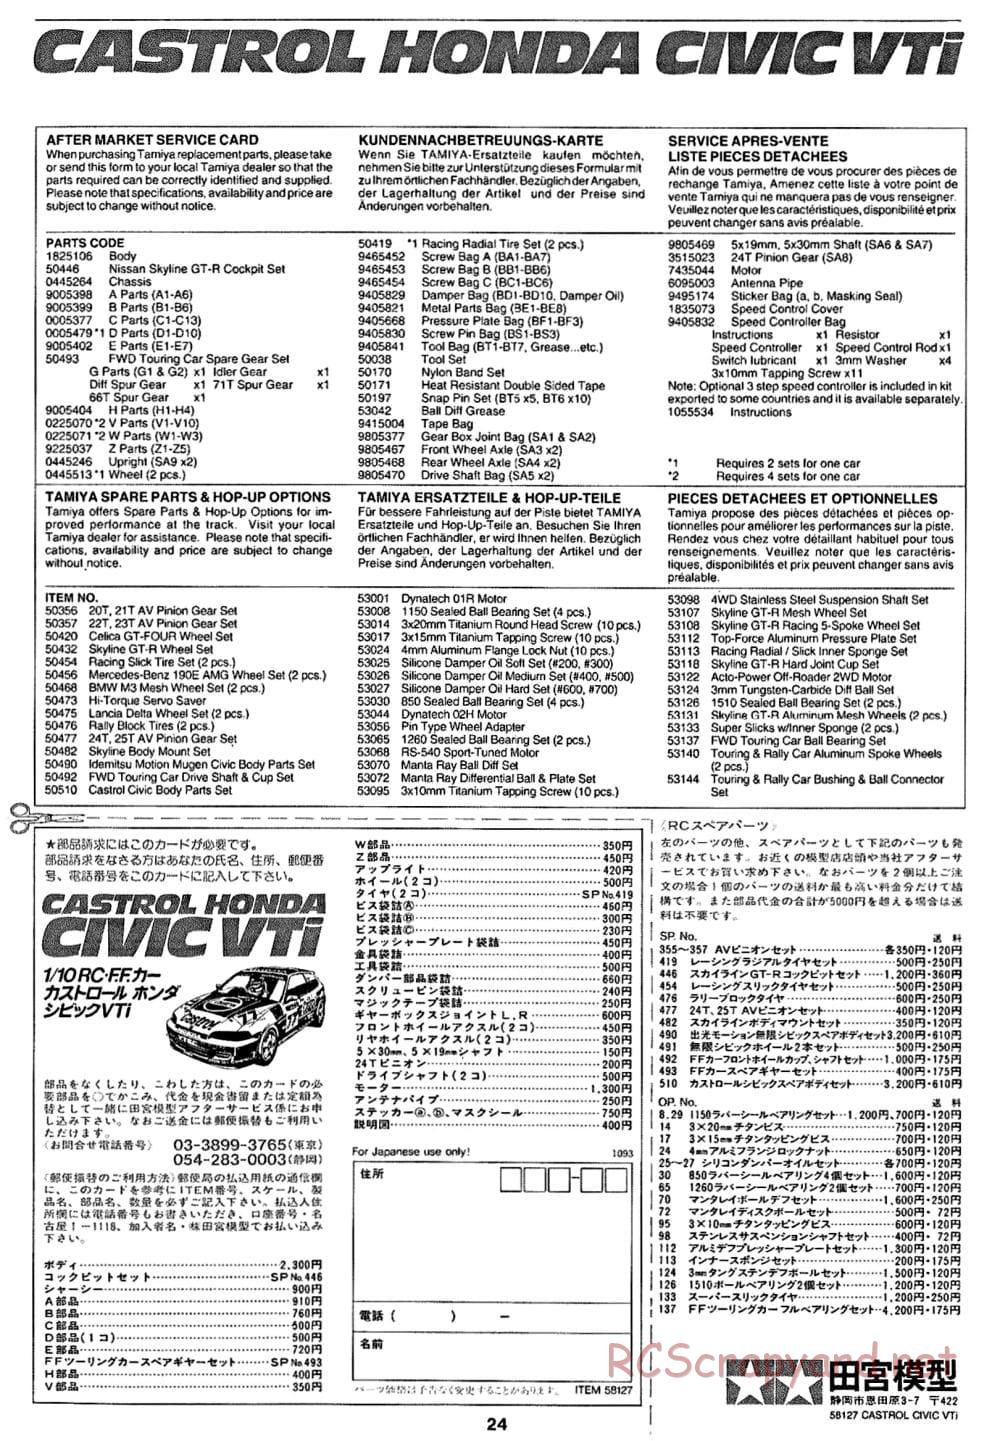 Tamiya - Castrol Honda Civic VTi - FF-01 Chassis - Manual - Page 24